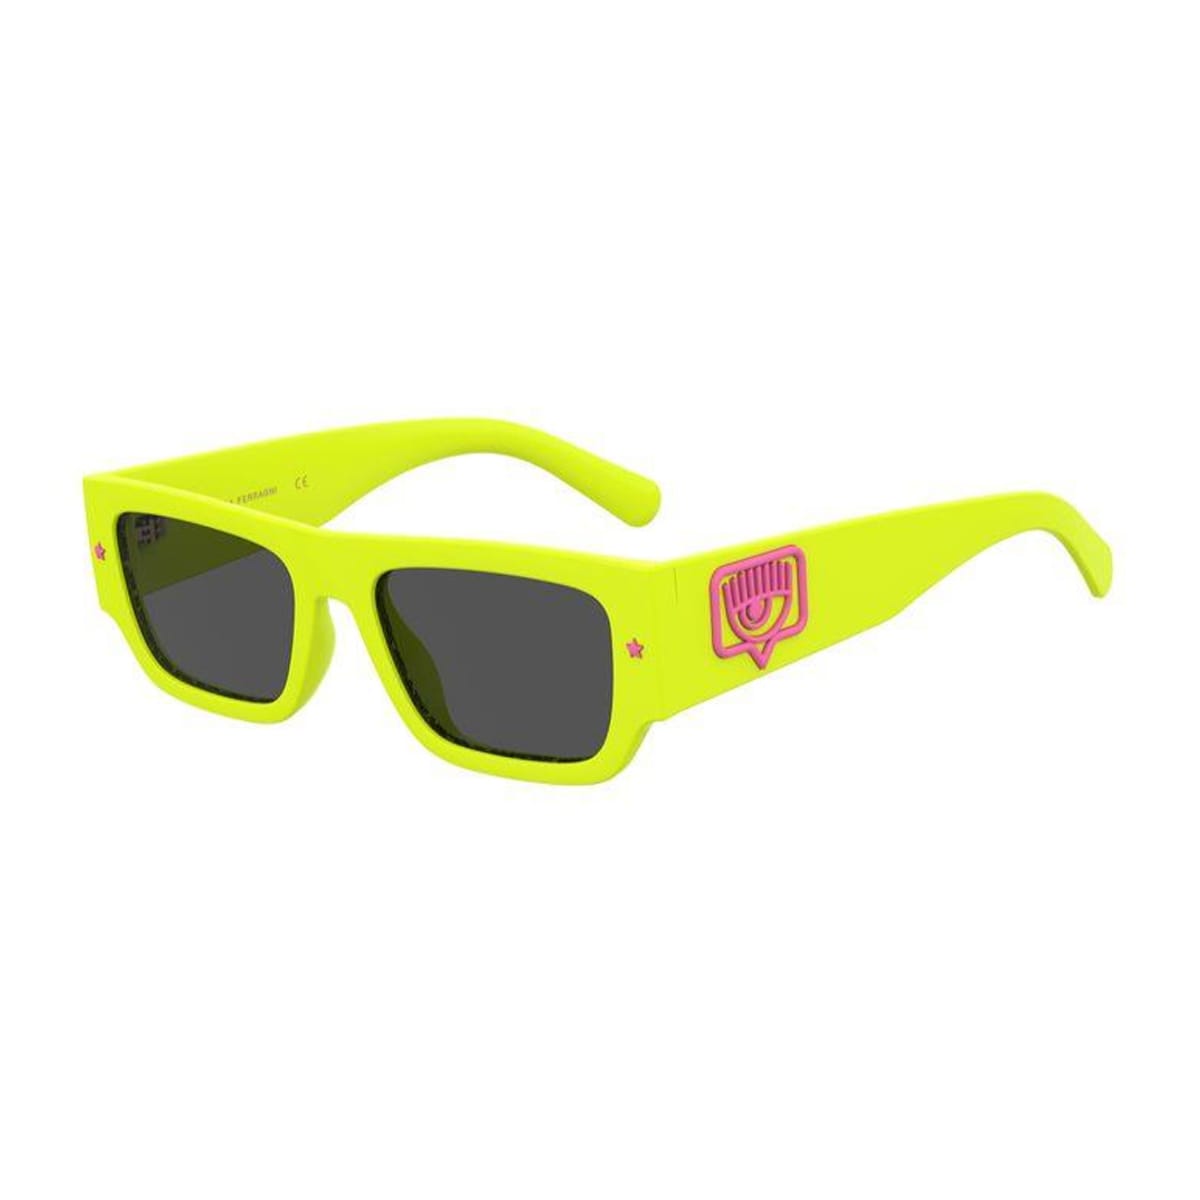 Cf 7013/s Sunglasses